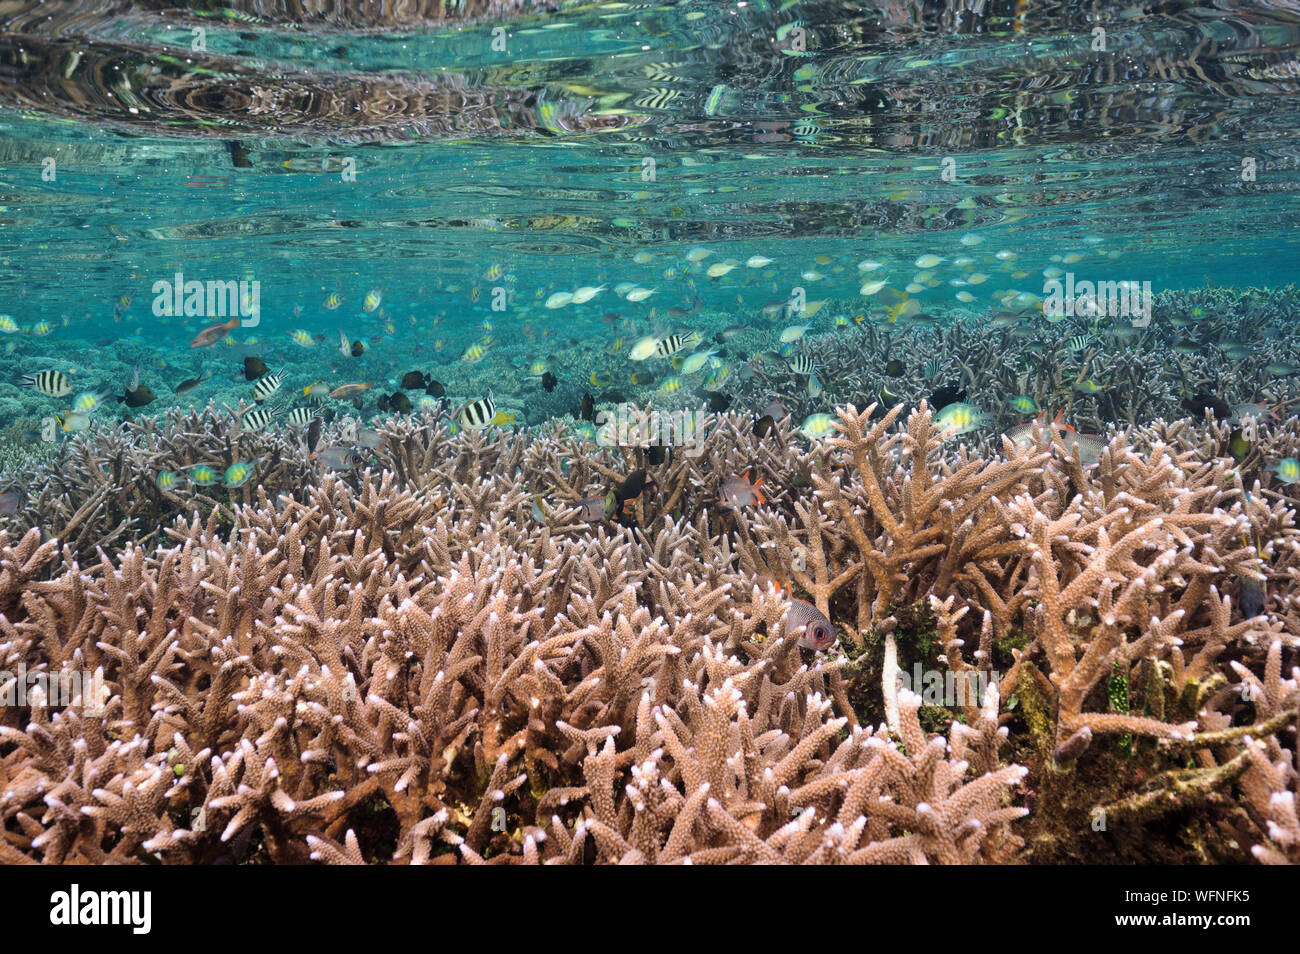 Reef scenic con immacolate Acropora coralli duri Raja Ampat Indonesia. Foto Stock